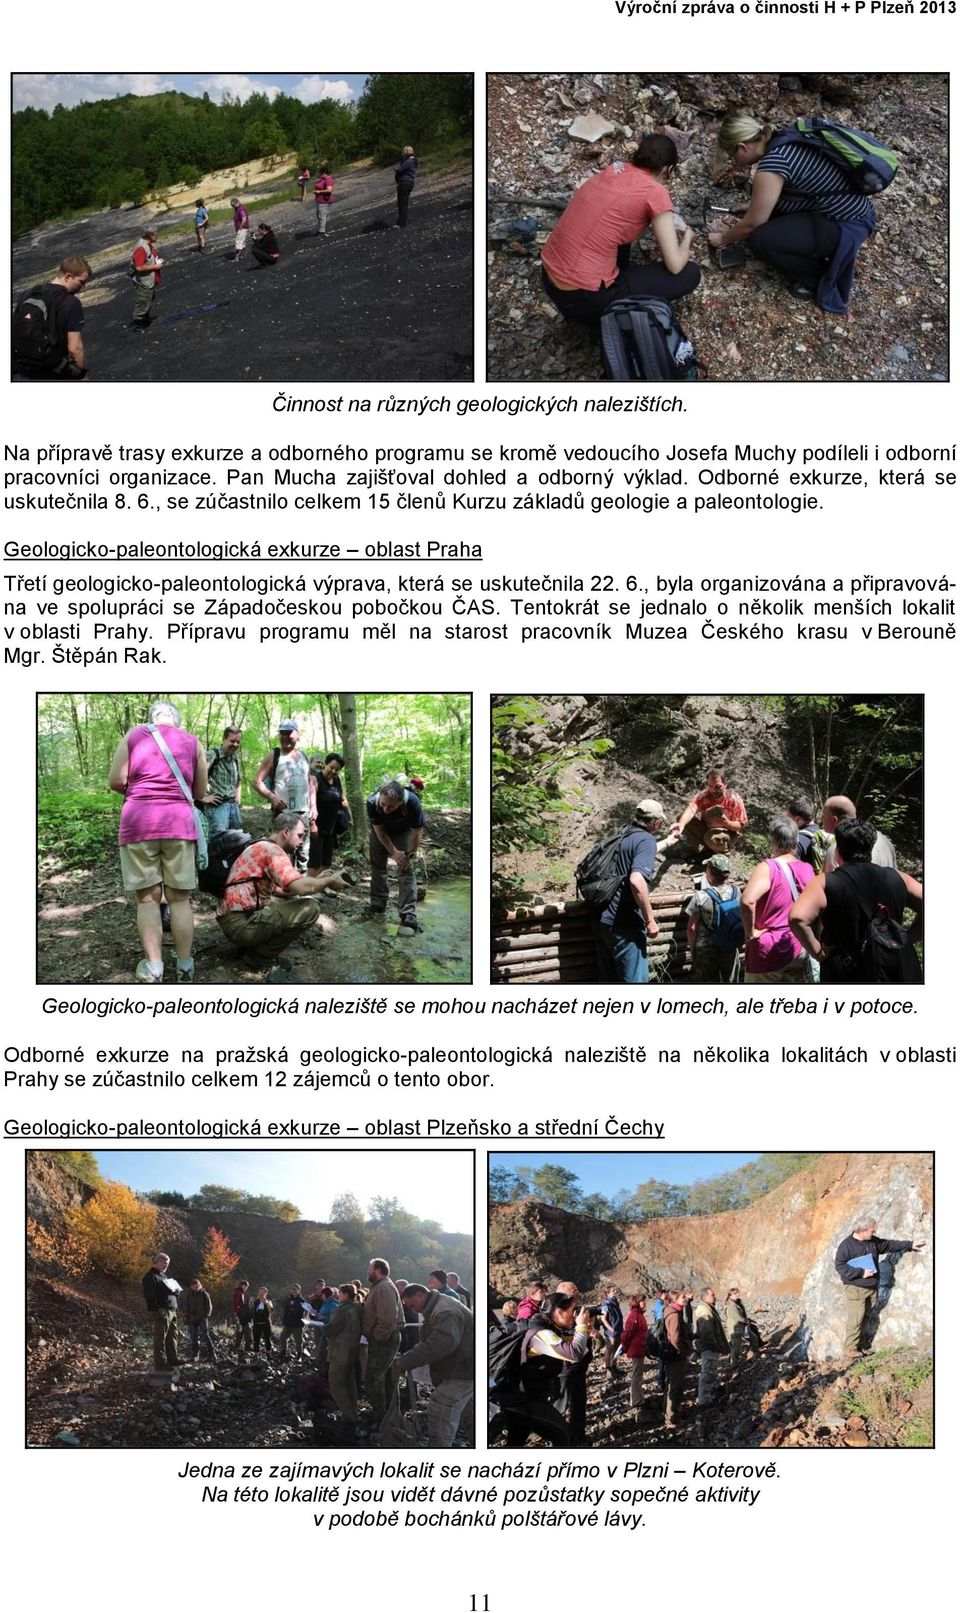 Geologicko-paleontologická exkurze oblast Praha Třetí geologicko-paleontologická výprava, která se uskutečnila 22. 6., byla organizována a připravována ve spolupráci se Západočeskou pobočkou ČAS.